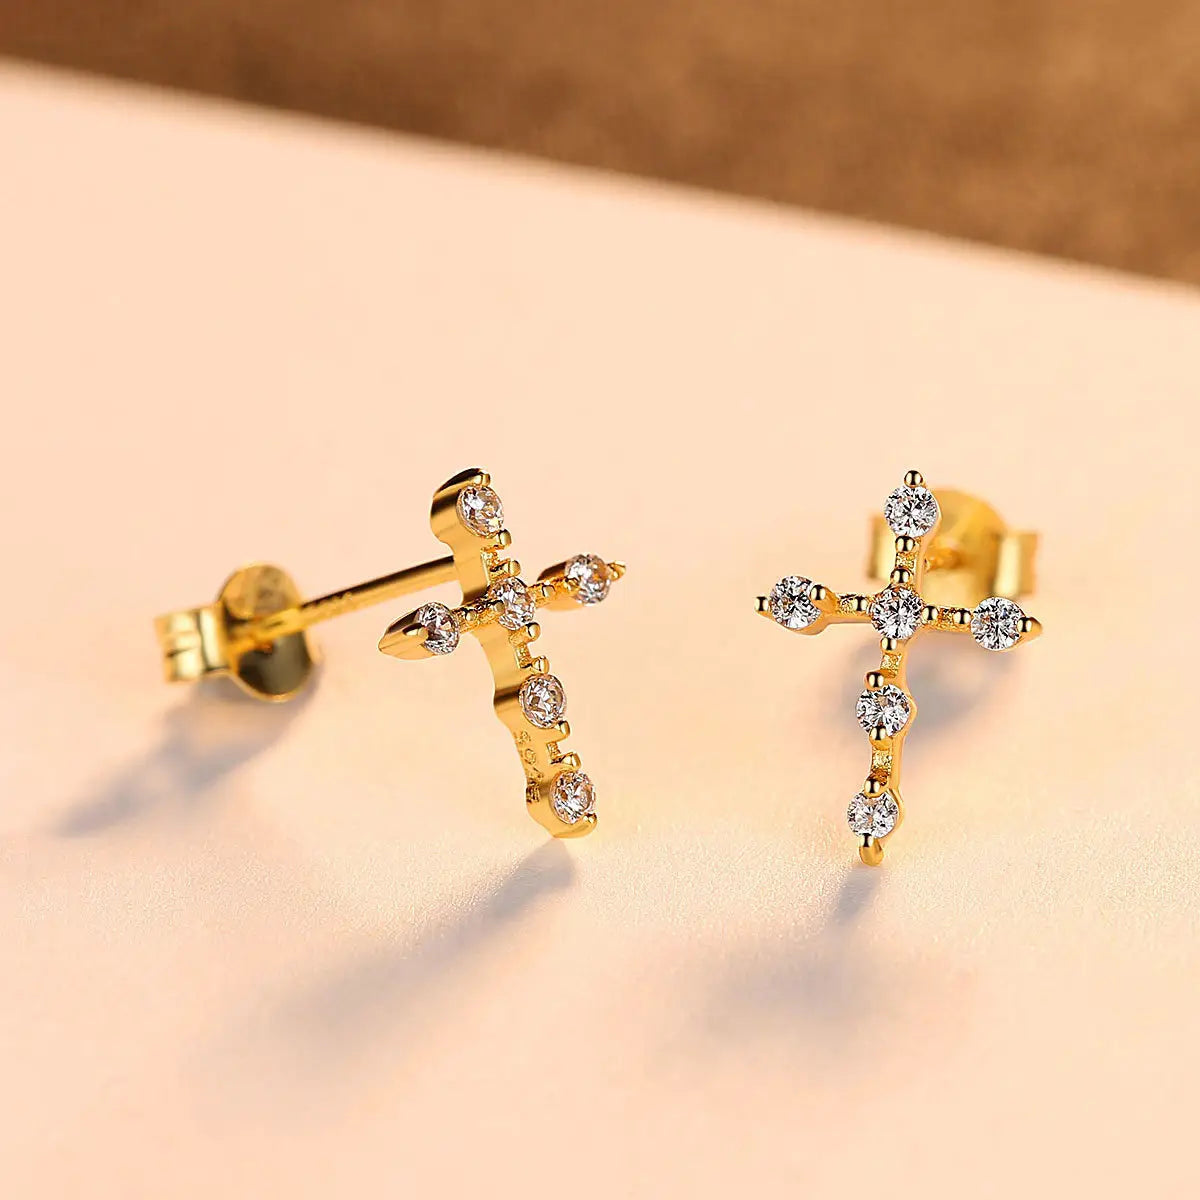 Small Zircon Cross Earrings